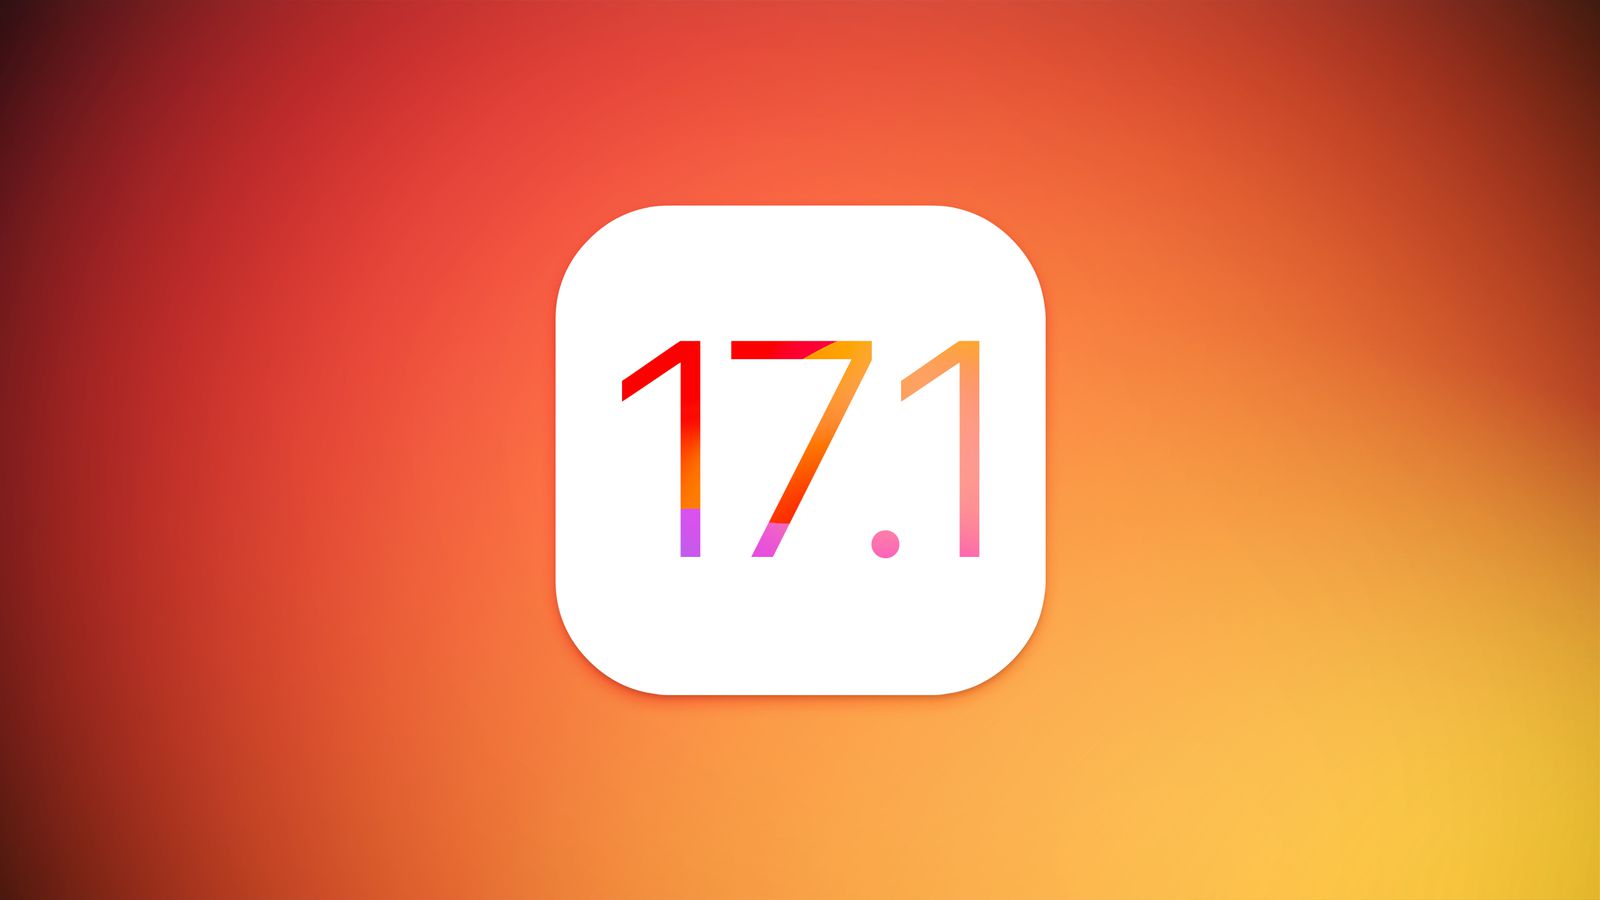 Nach macOS Sonoma 14.1 Beta 1: Die erste Testversion von iOS 17.1 wurde veröffentlicht